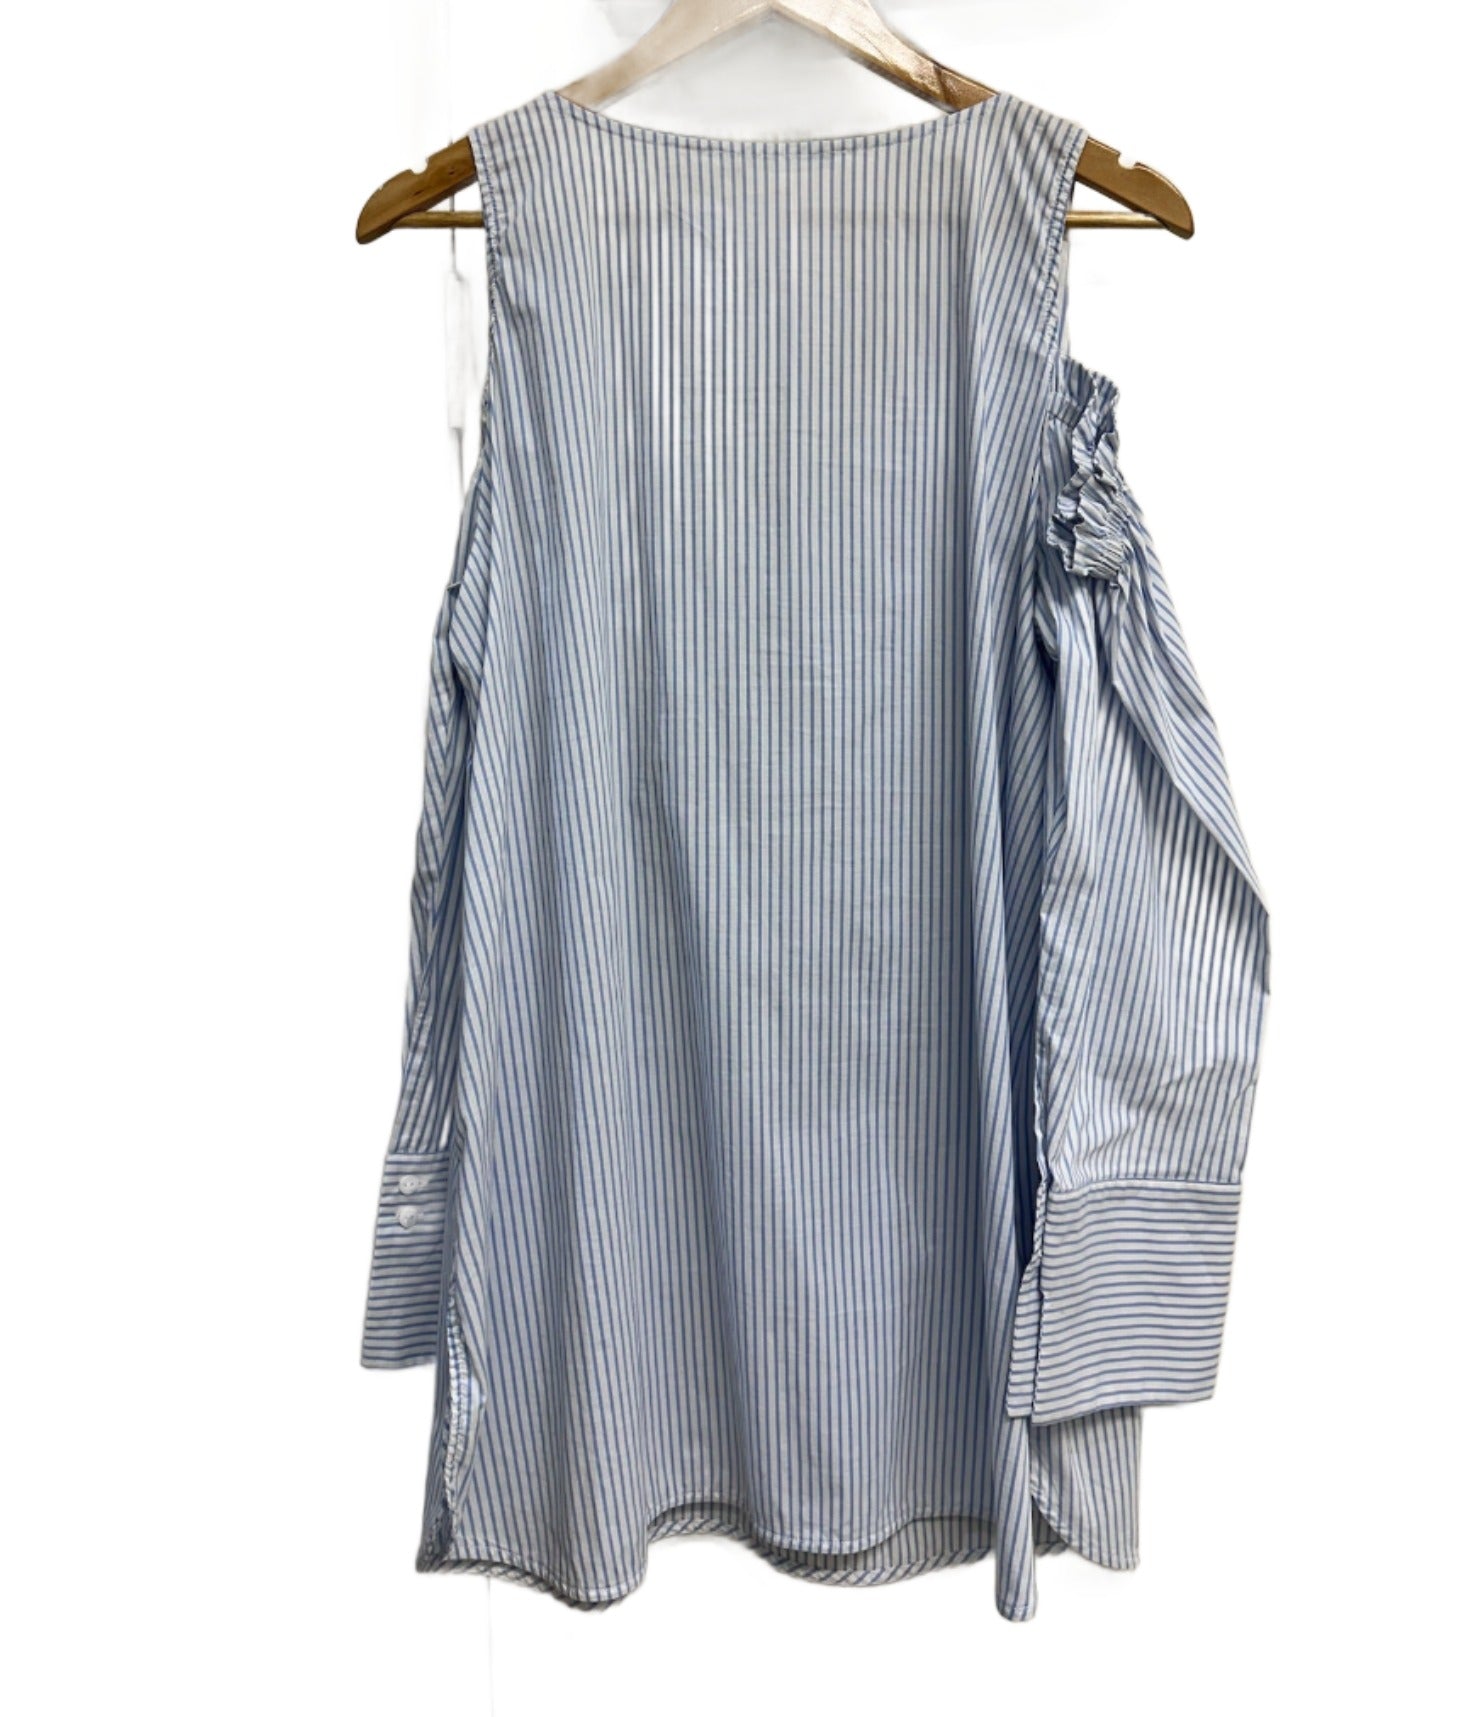 Lauren Vidal Blue & White Striped Shirt